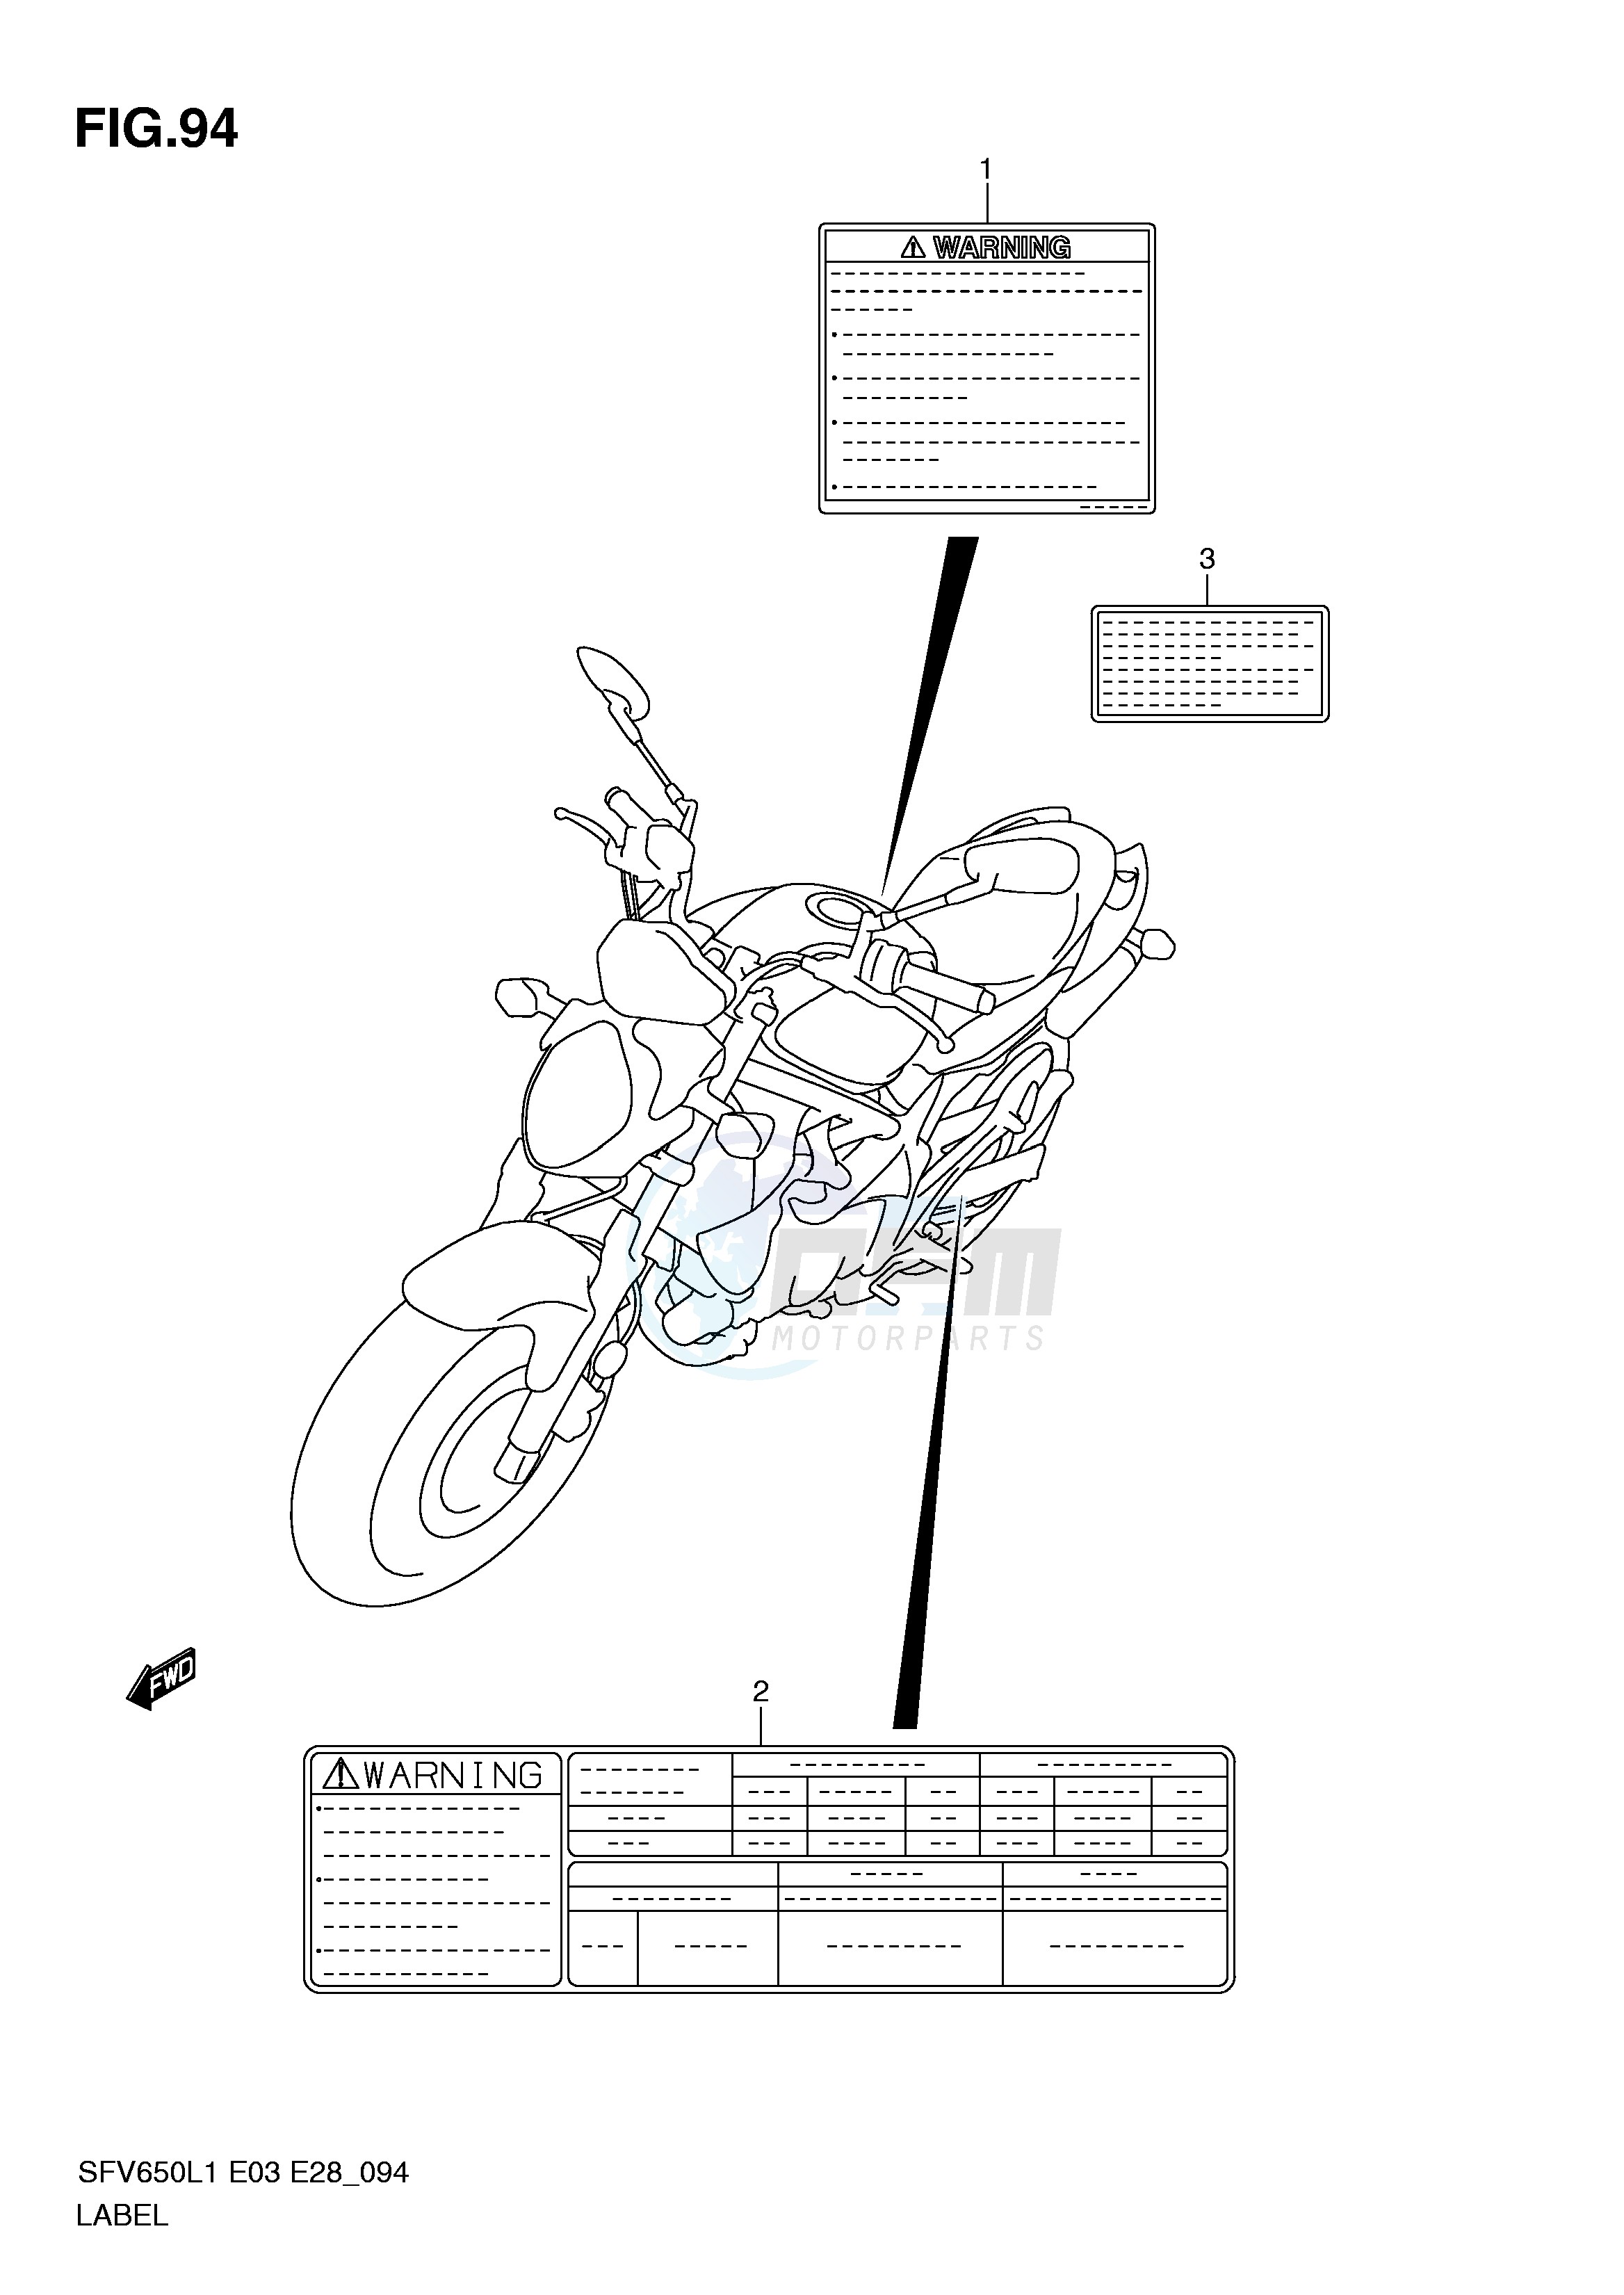 LABEL (SFV650L1 E3) blueprint